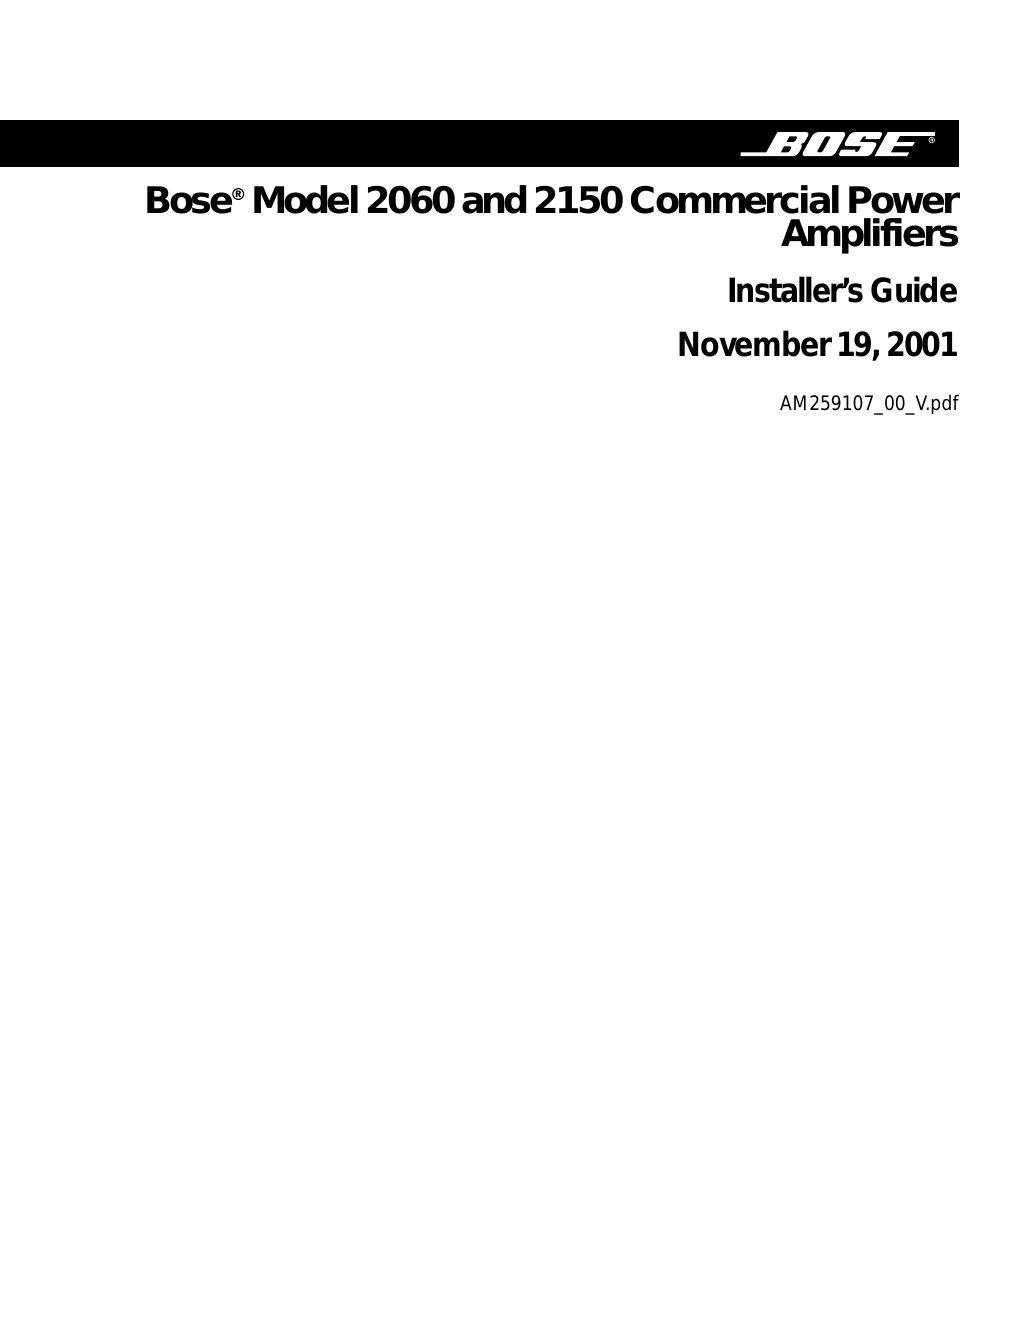 bose model 2150 amplifier installers guide